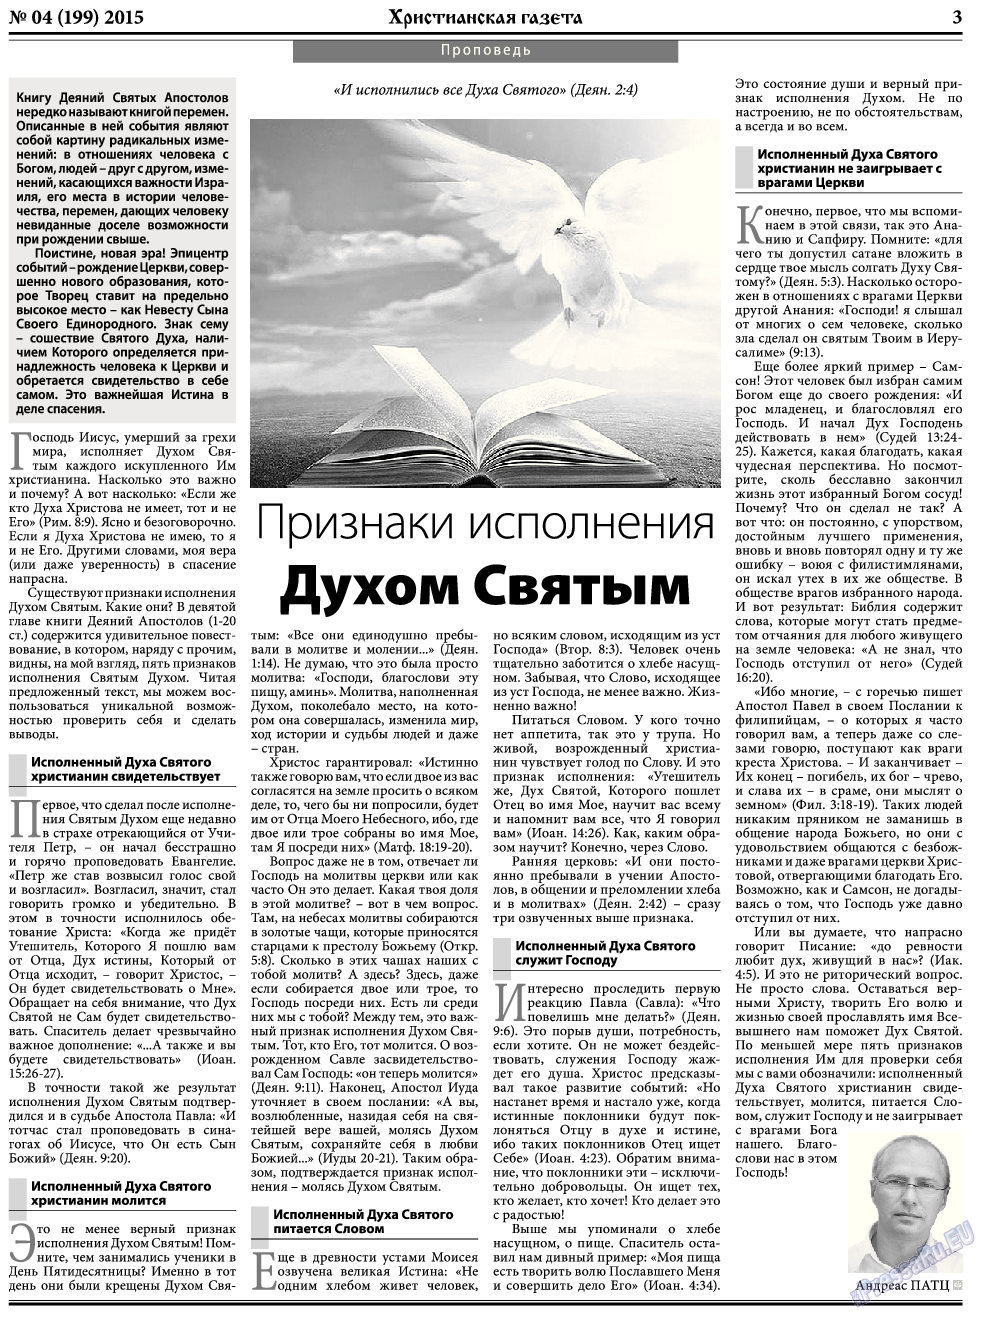 Христианская газета, газета. 2015 №5 стр.3